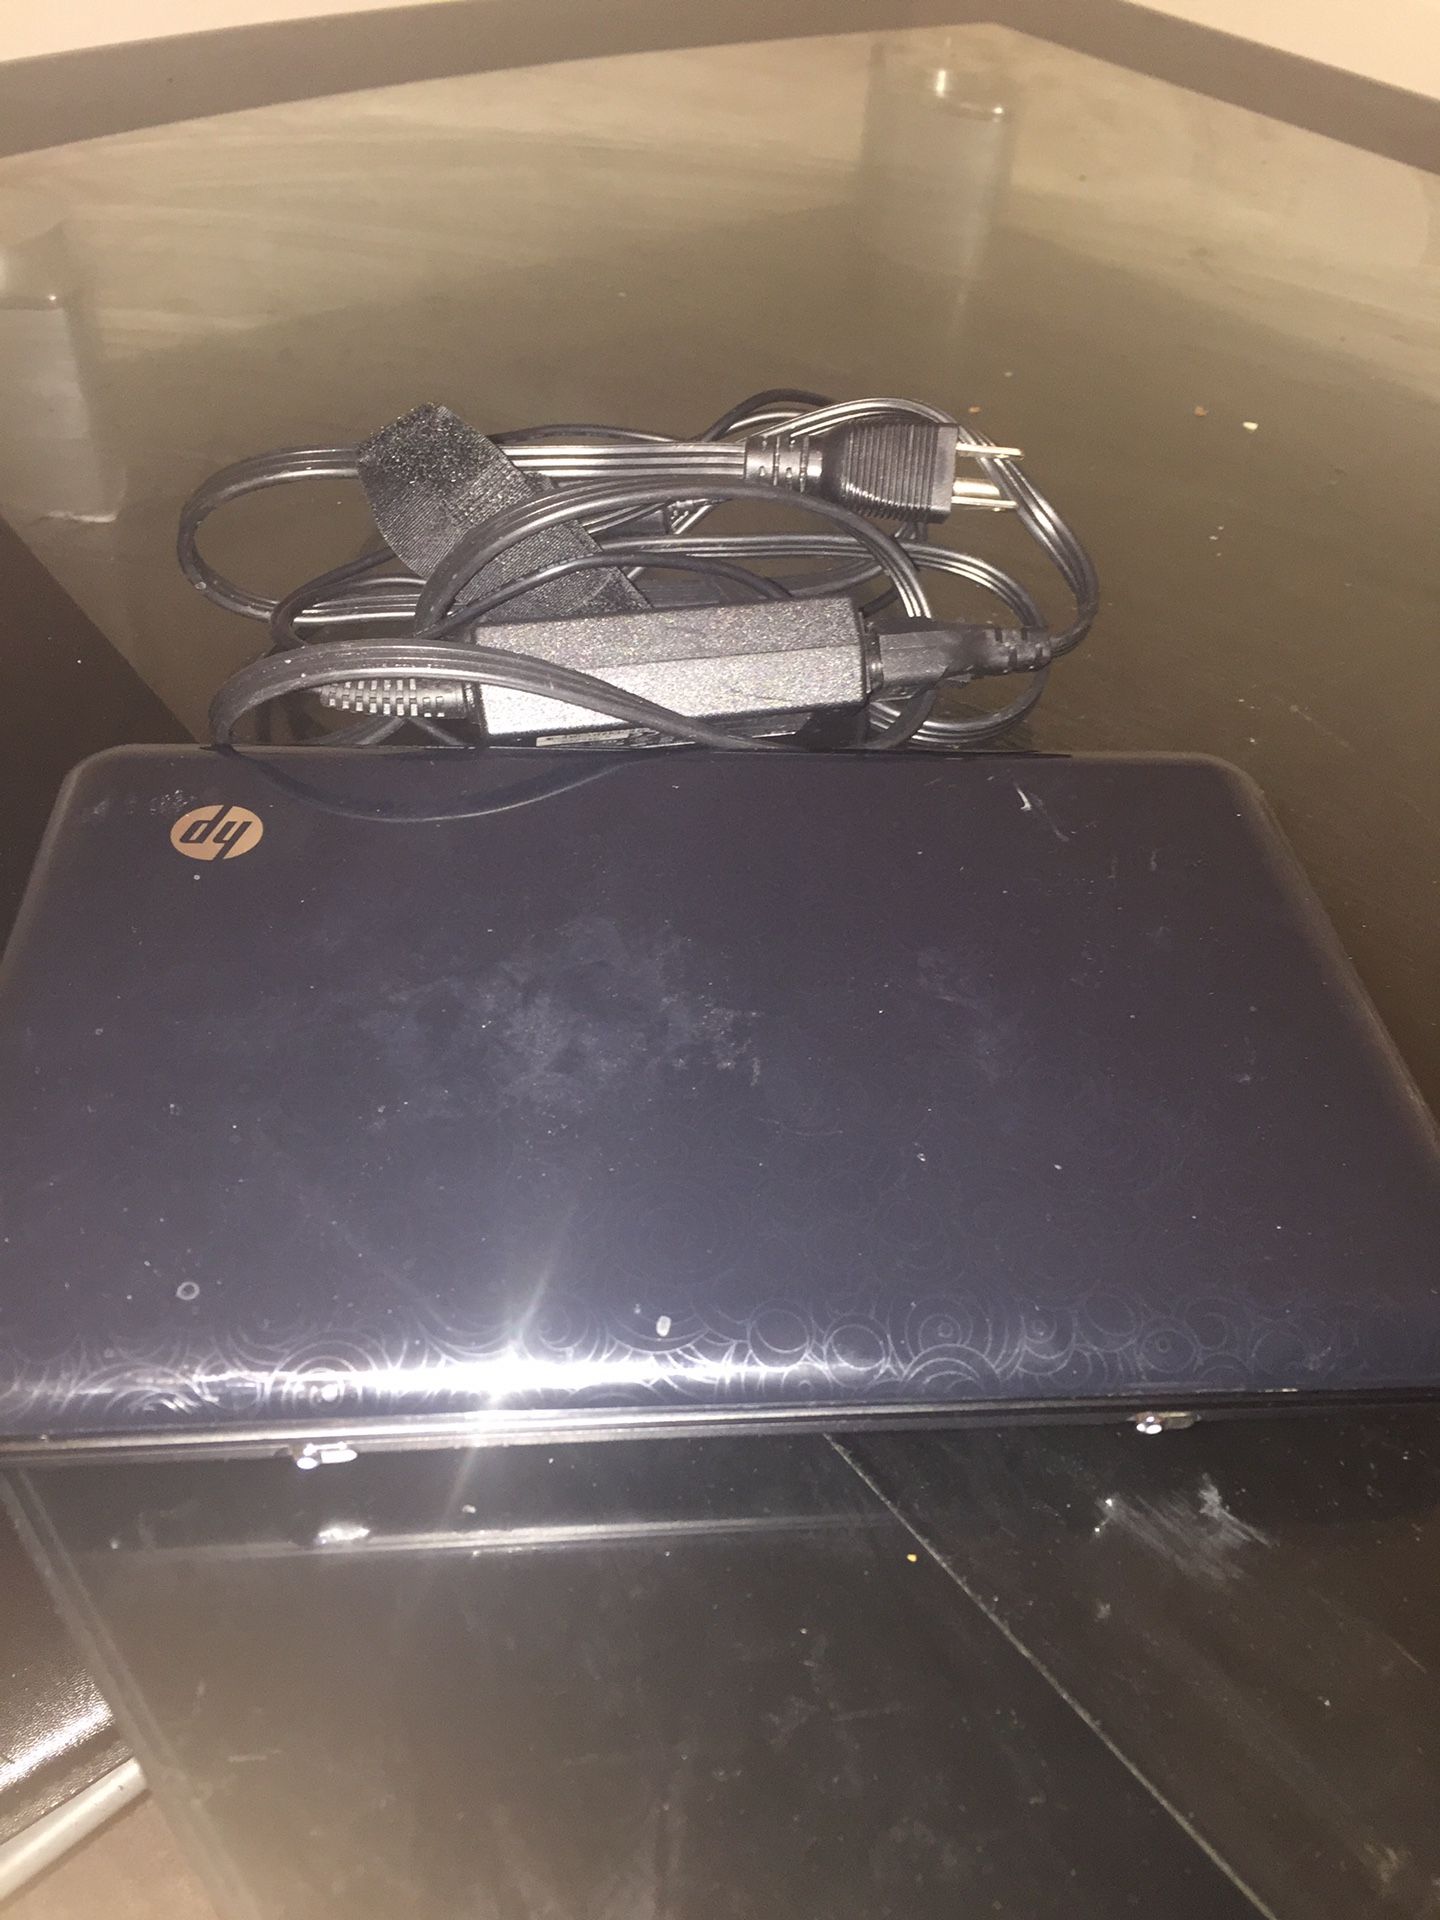 HP mini Laptop